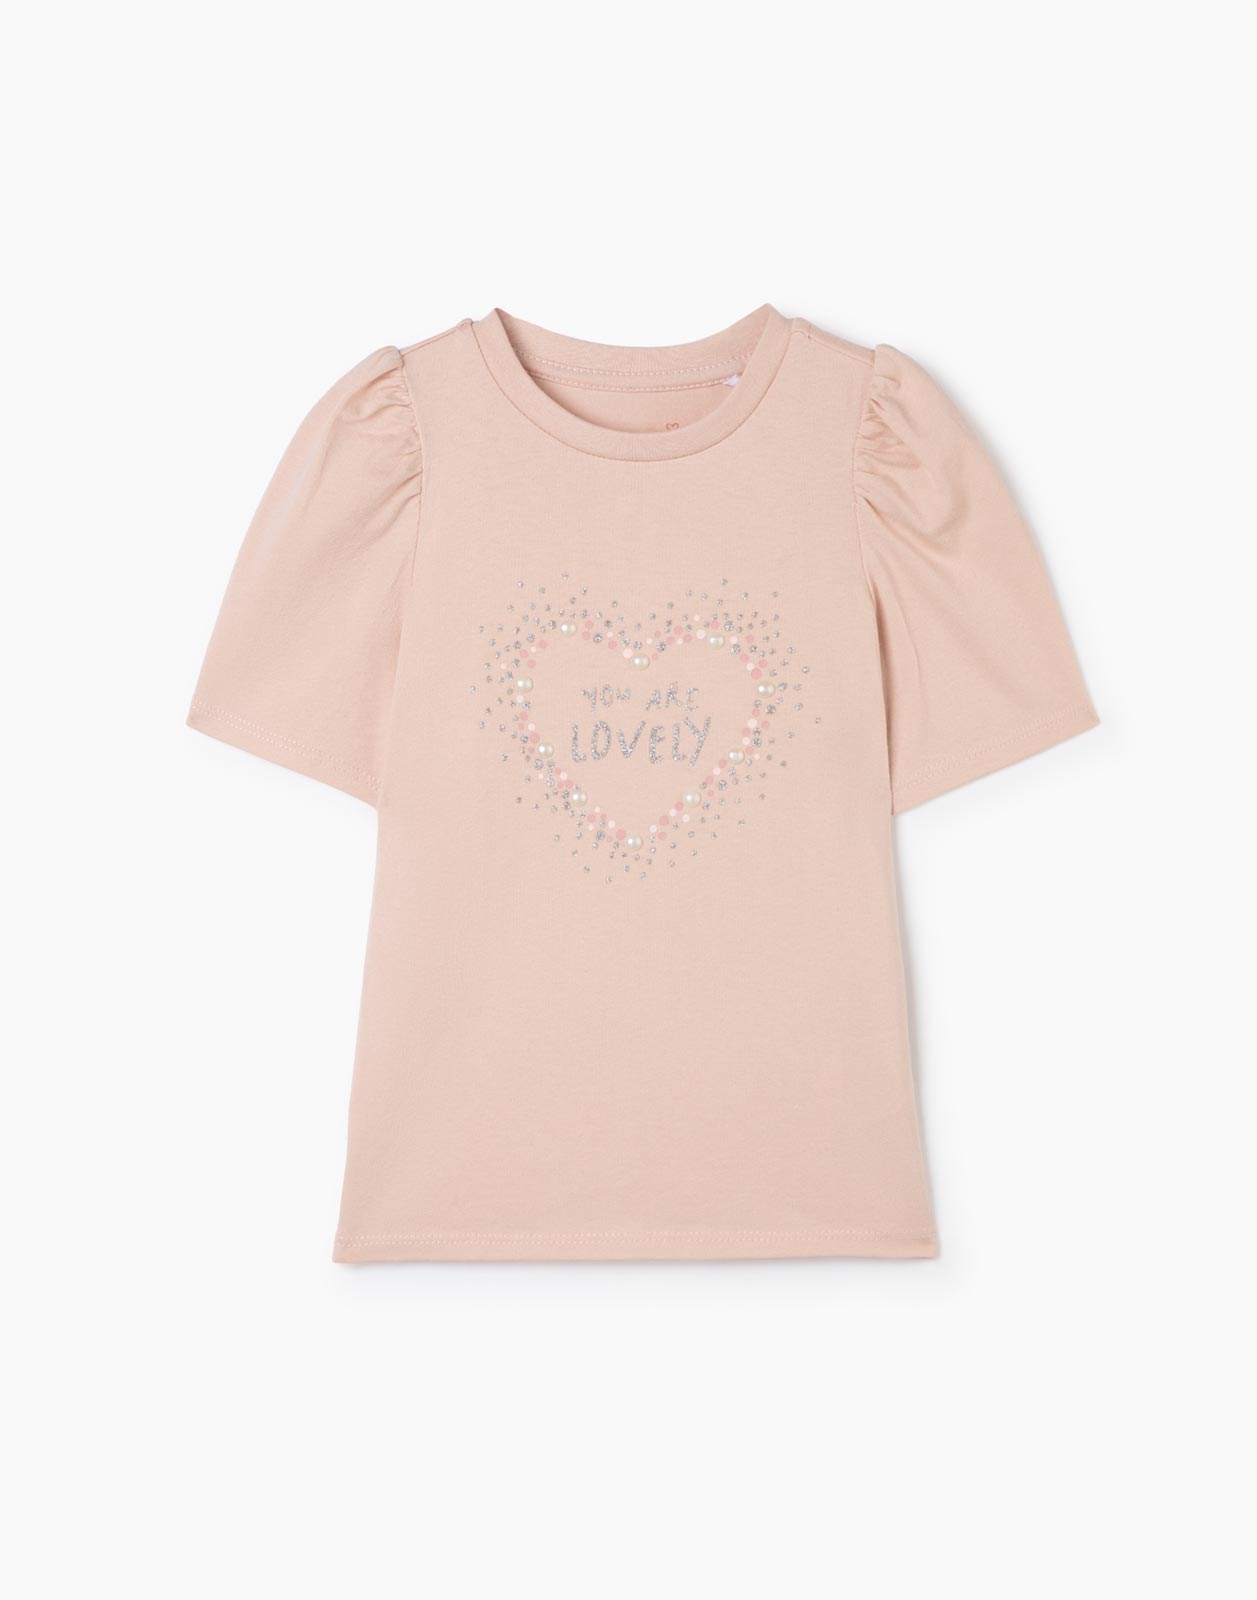 Розовая футболка straight с принтом для девочки, GKT021708 розовый 9-12мес/80